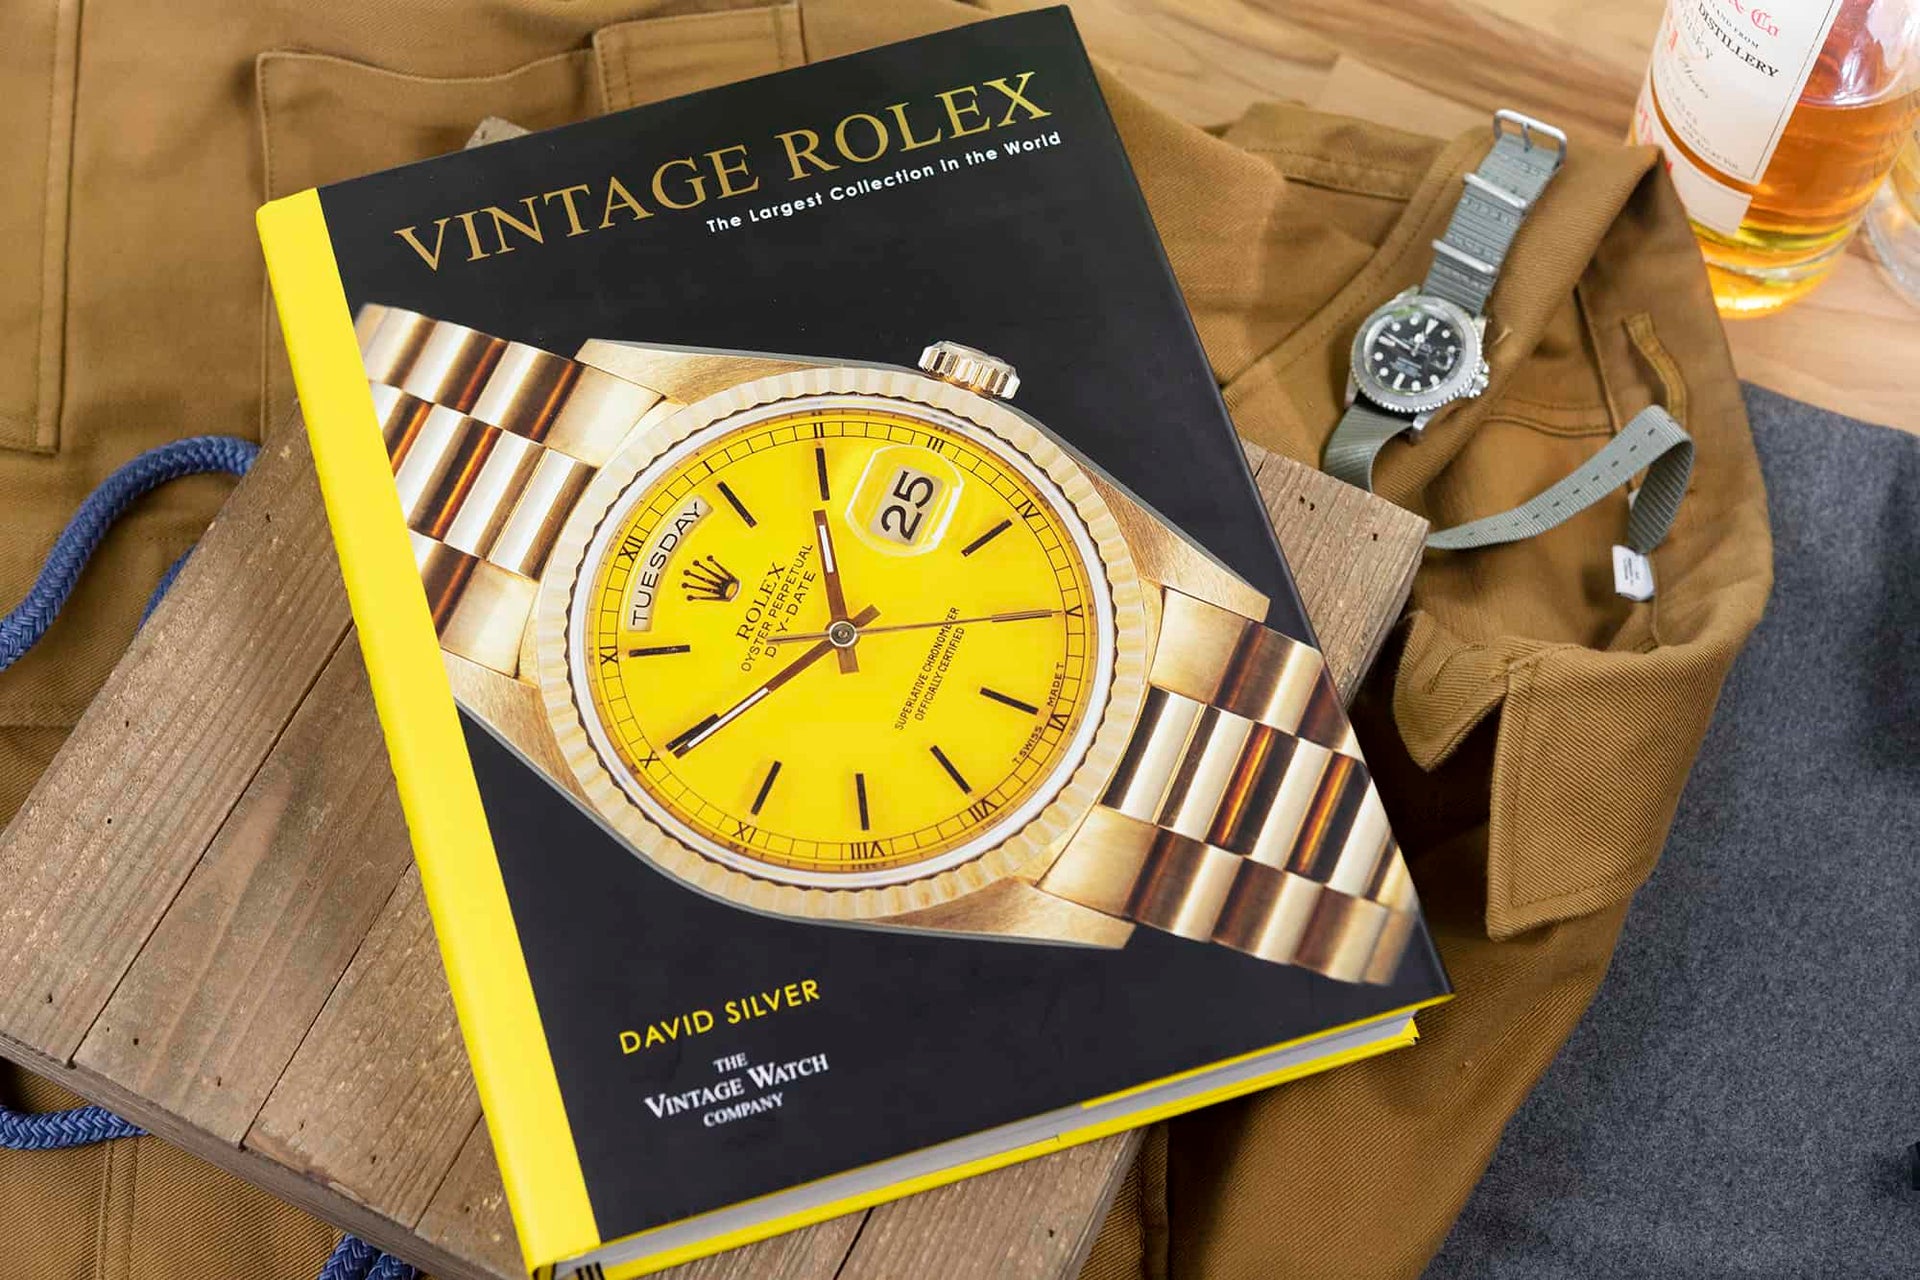 Vintage Rolex Book